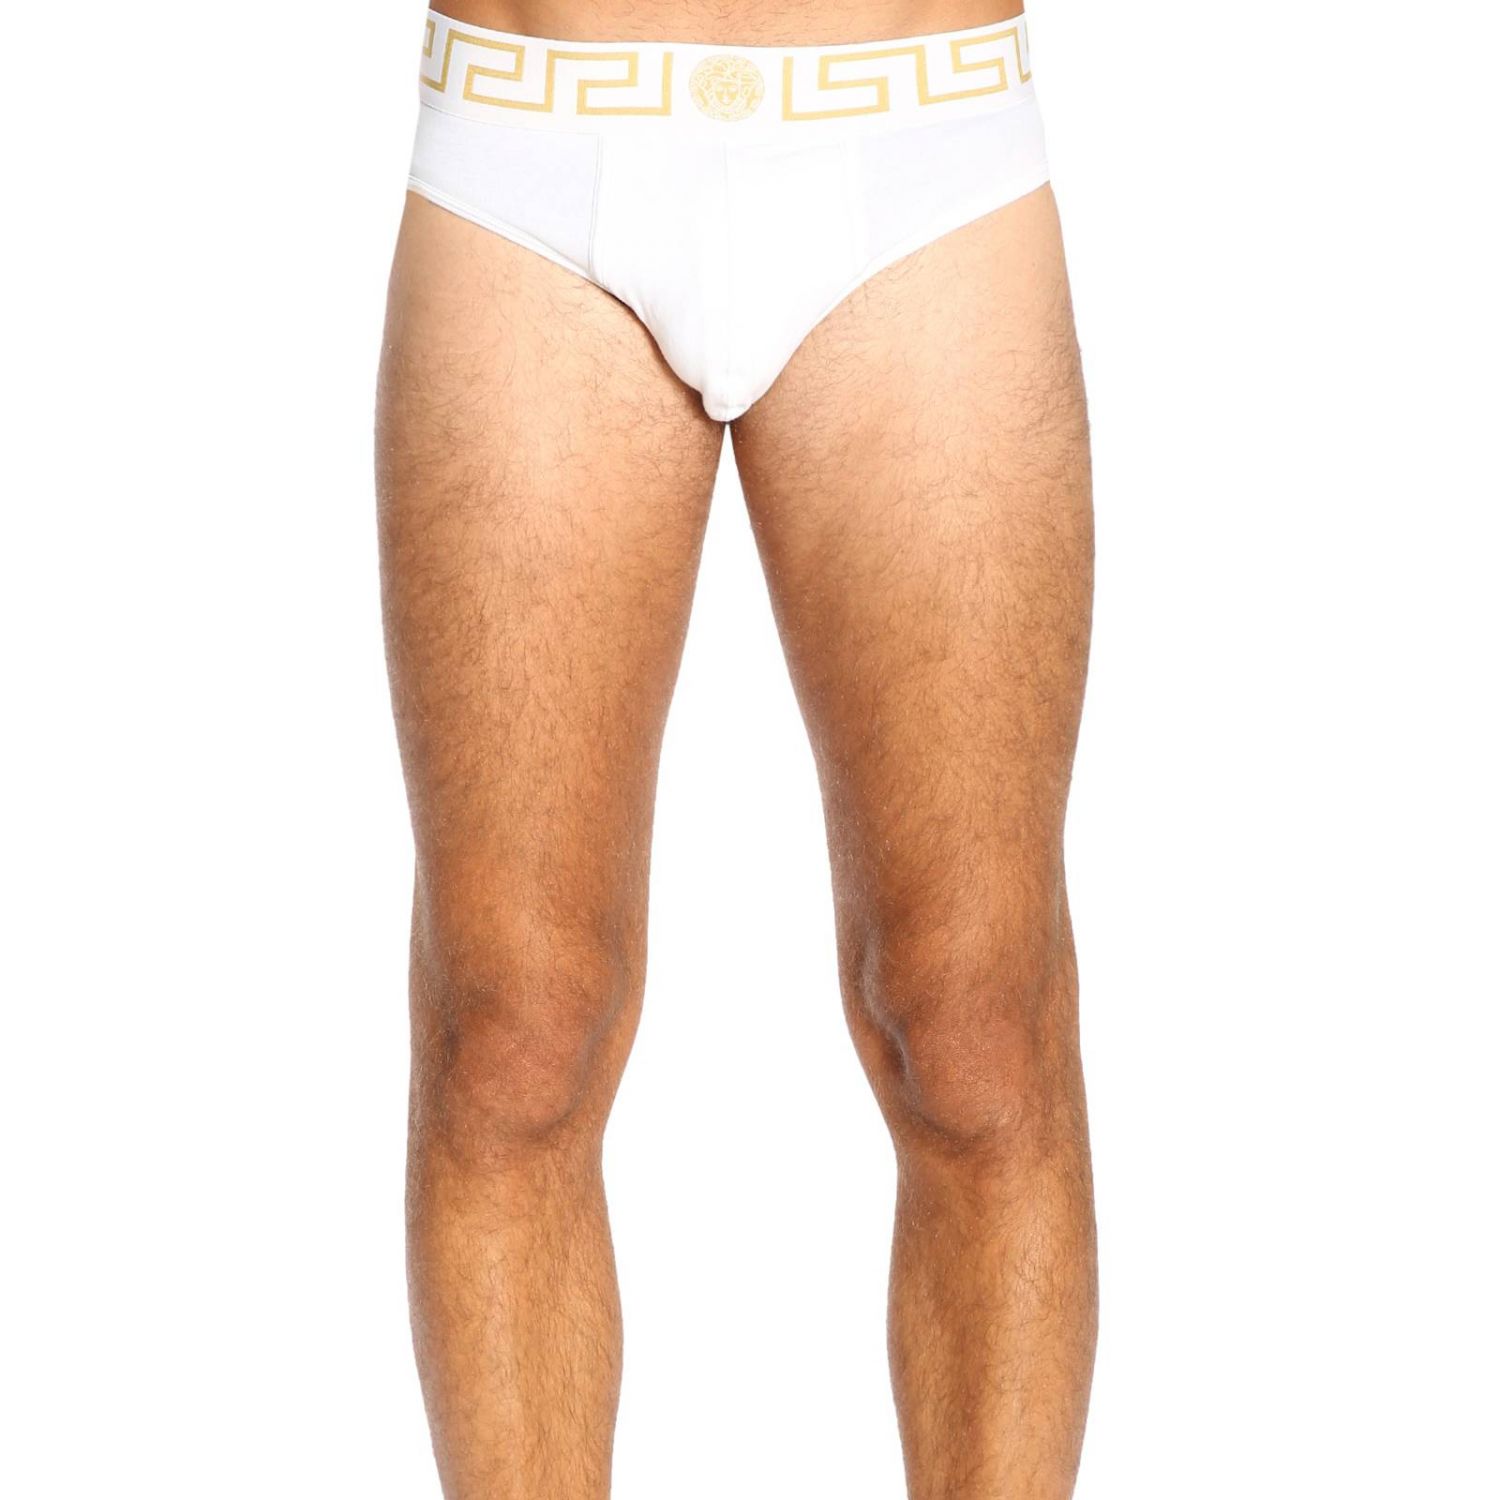 versace underwear white